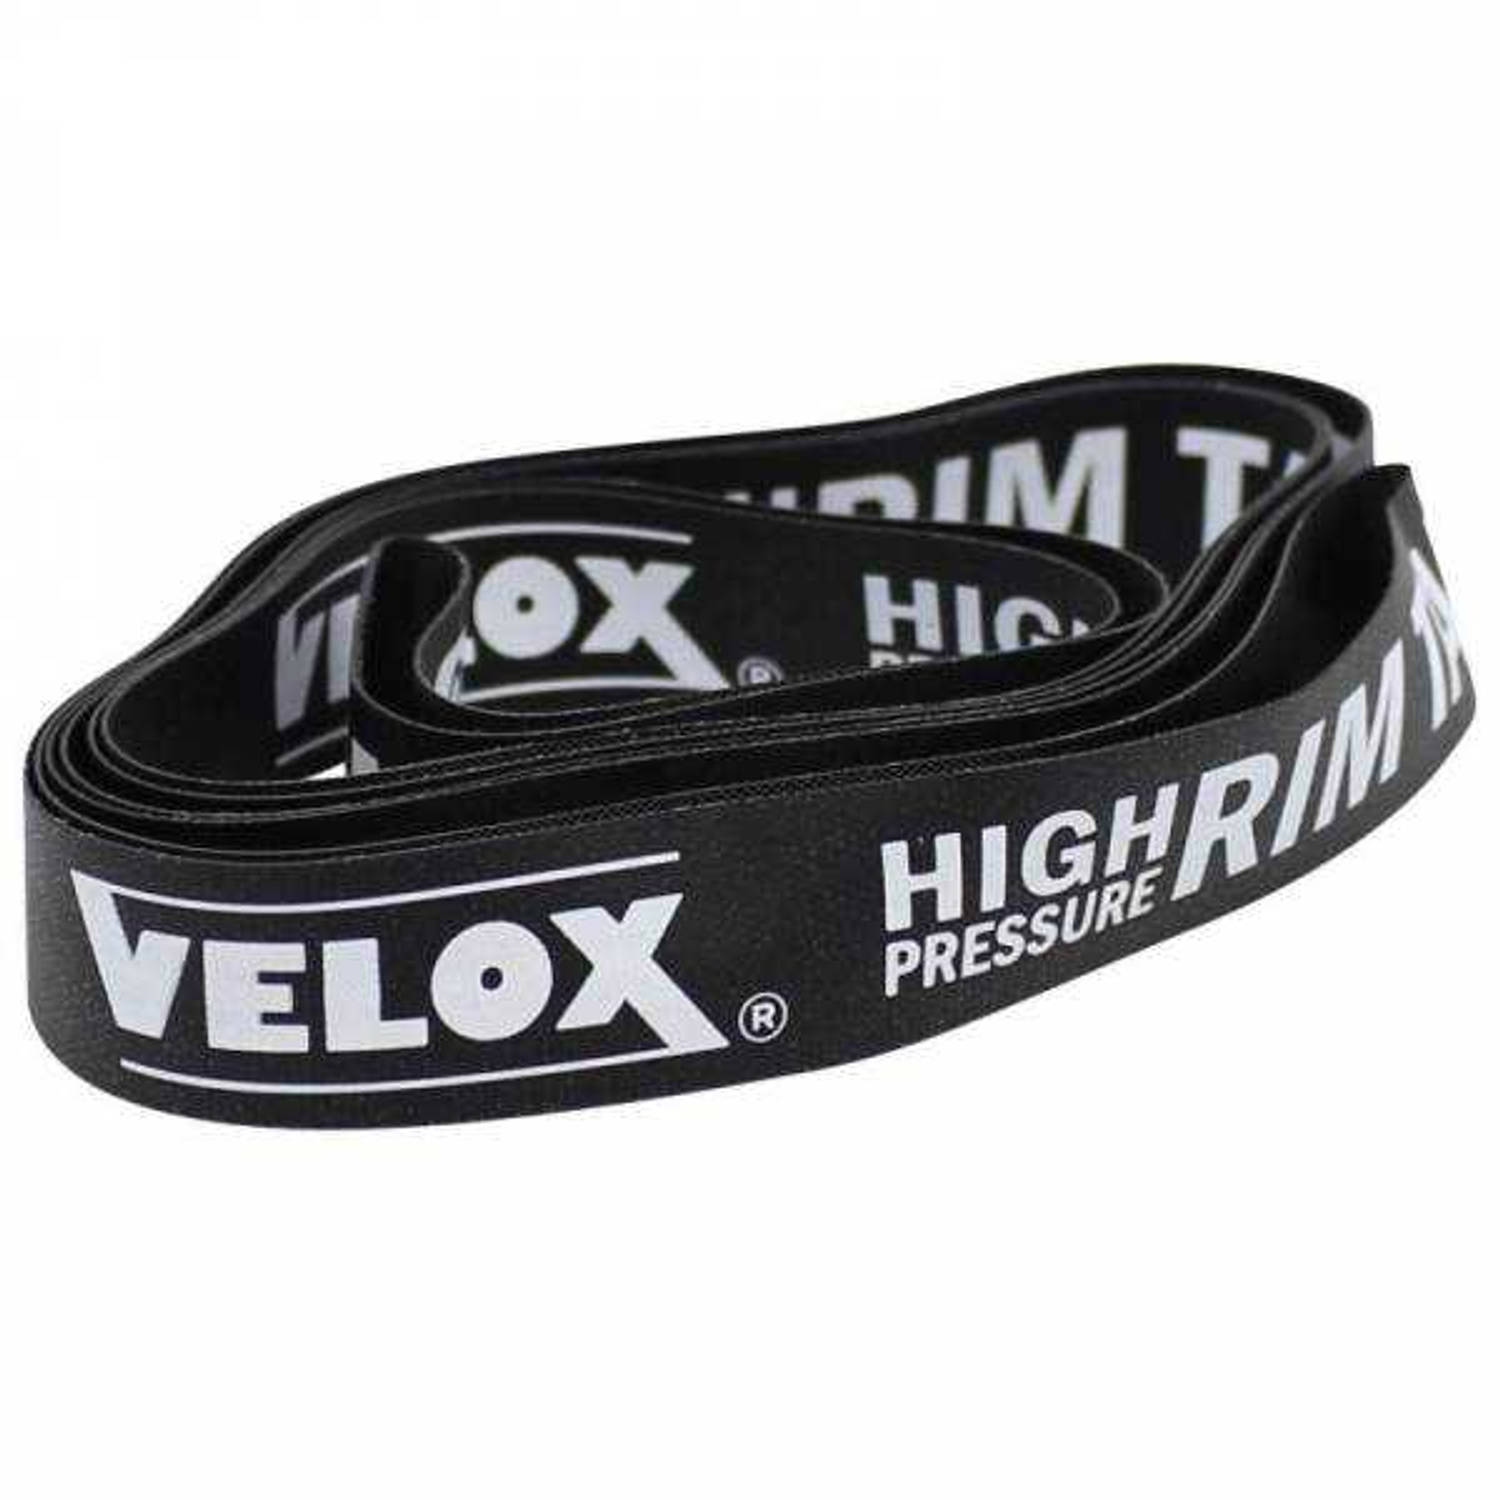 Velox velglint High Pressure VTT 29 622 22 mm zwart 20 stuks